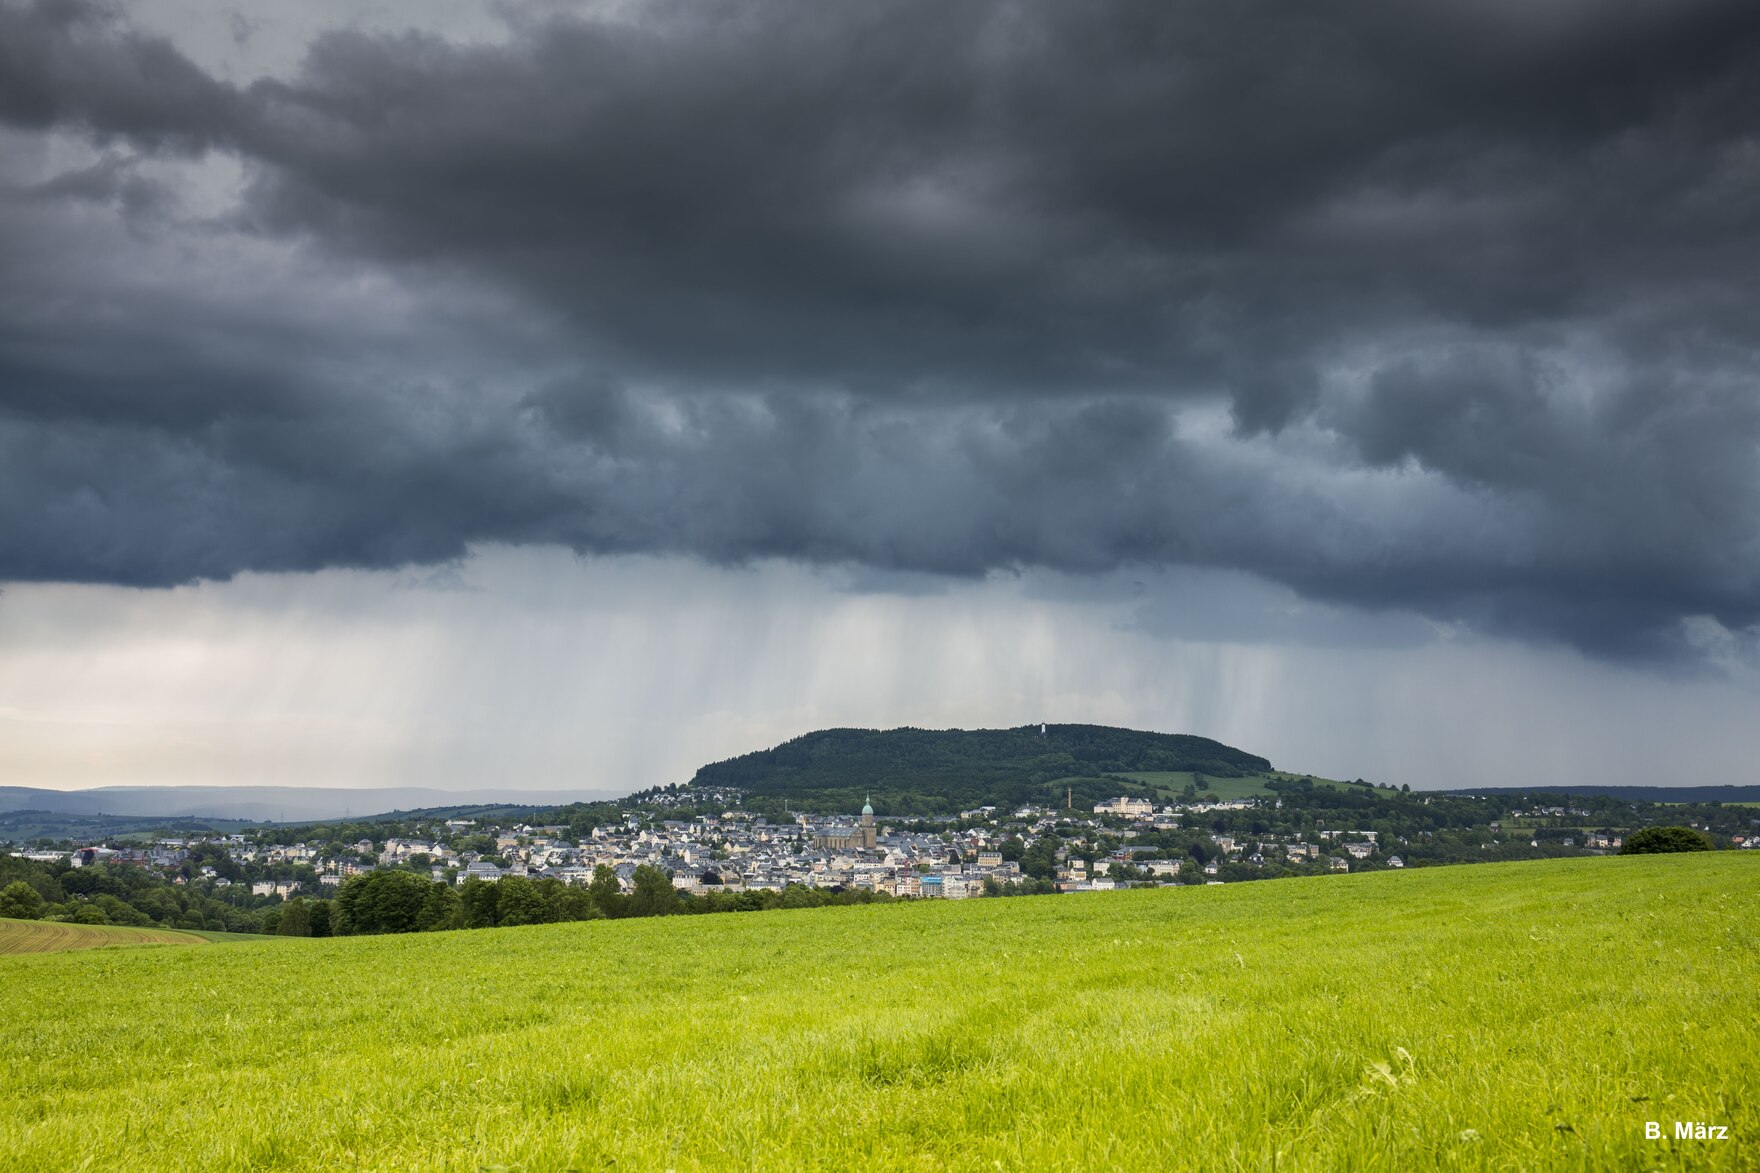 Helle Feld im Vordergrund, sächsische Kommune im Hintergrund darüber eine dunkle Regenwolke